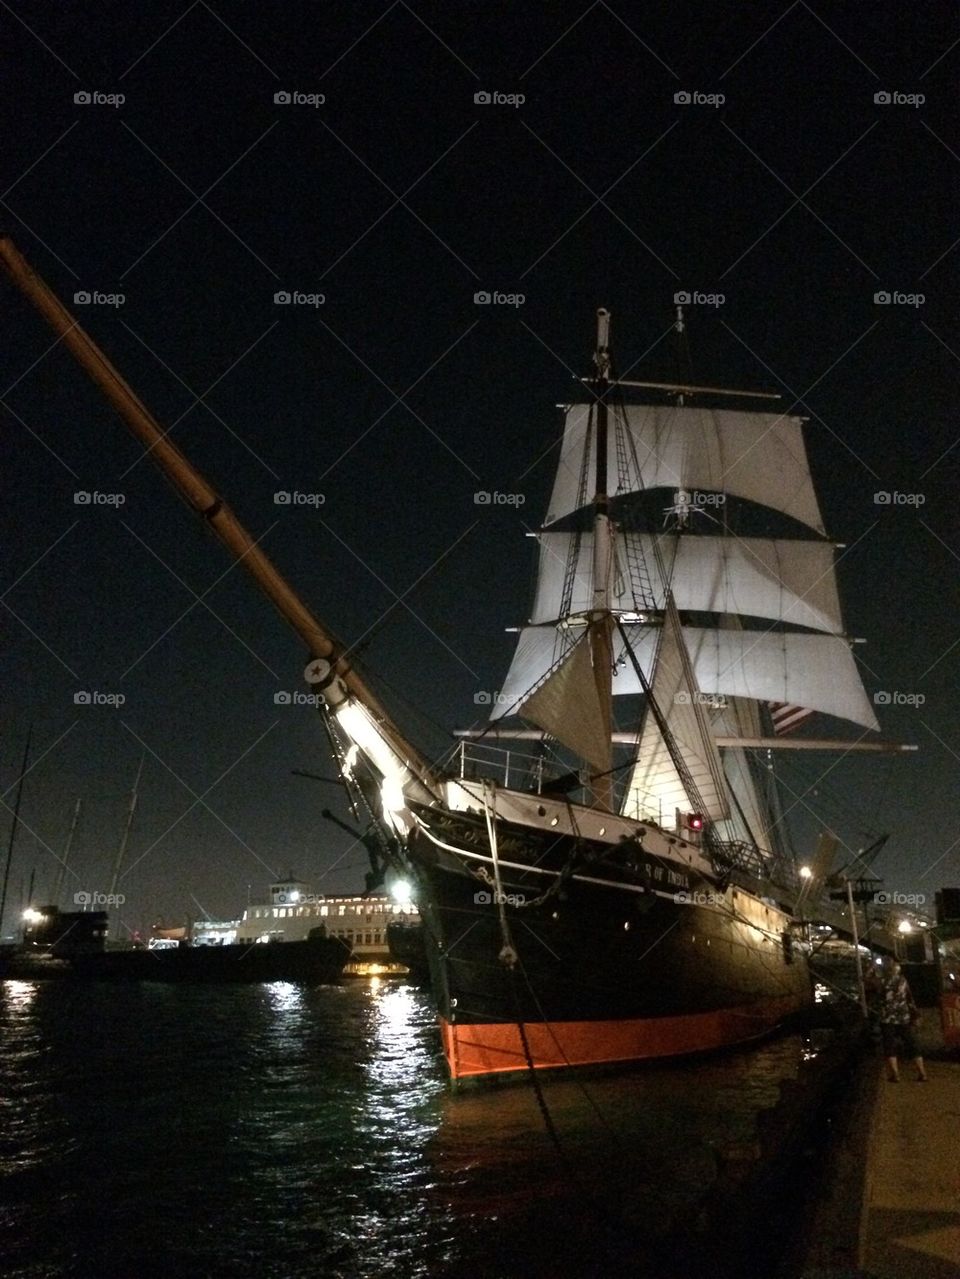 Sailing ship at night